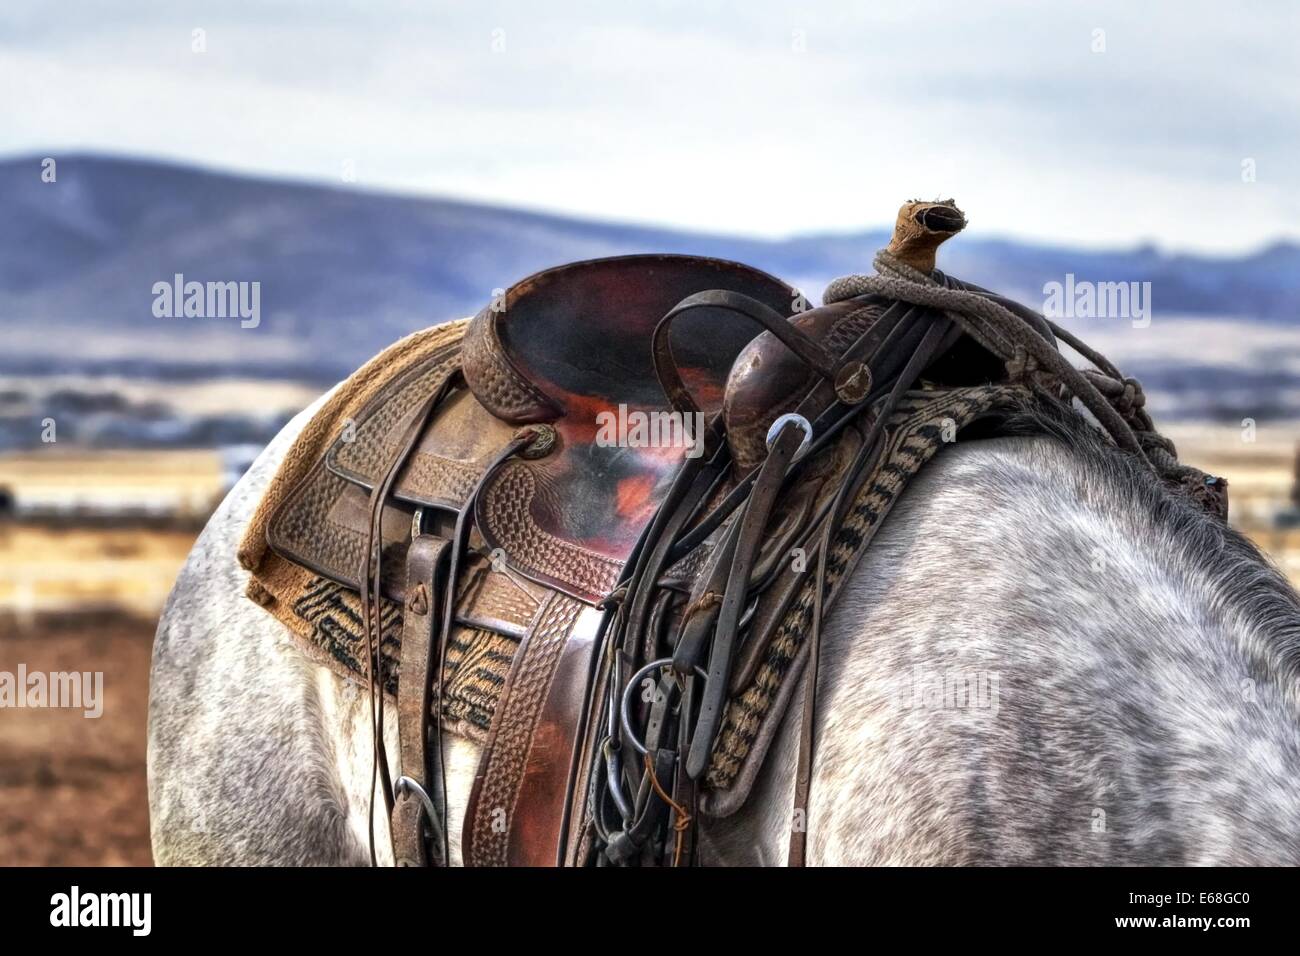 saddle horse cowboy western country animal farm Stock Photo